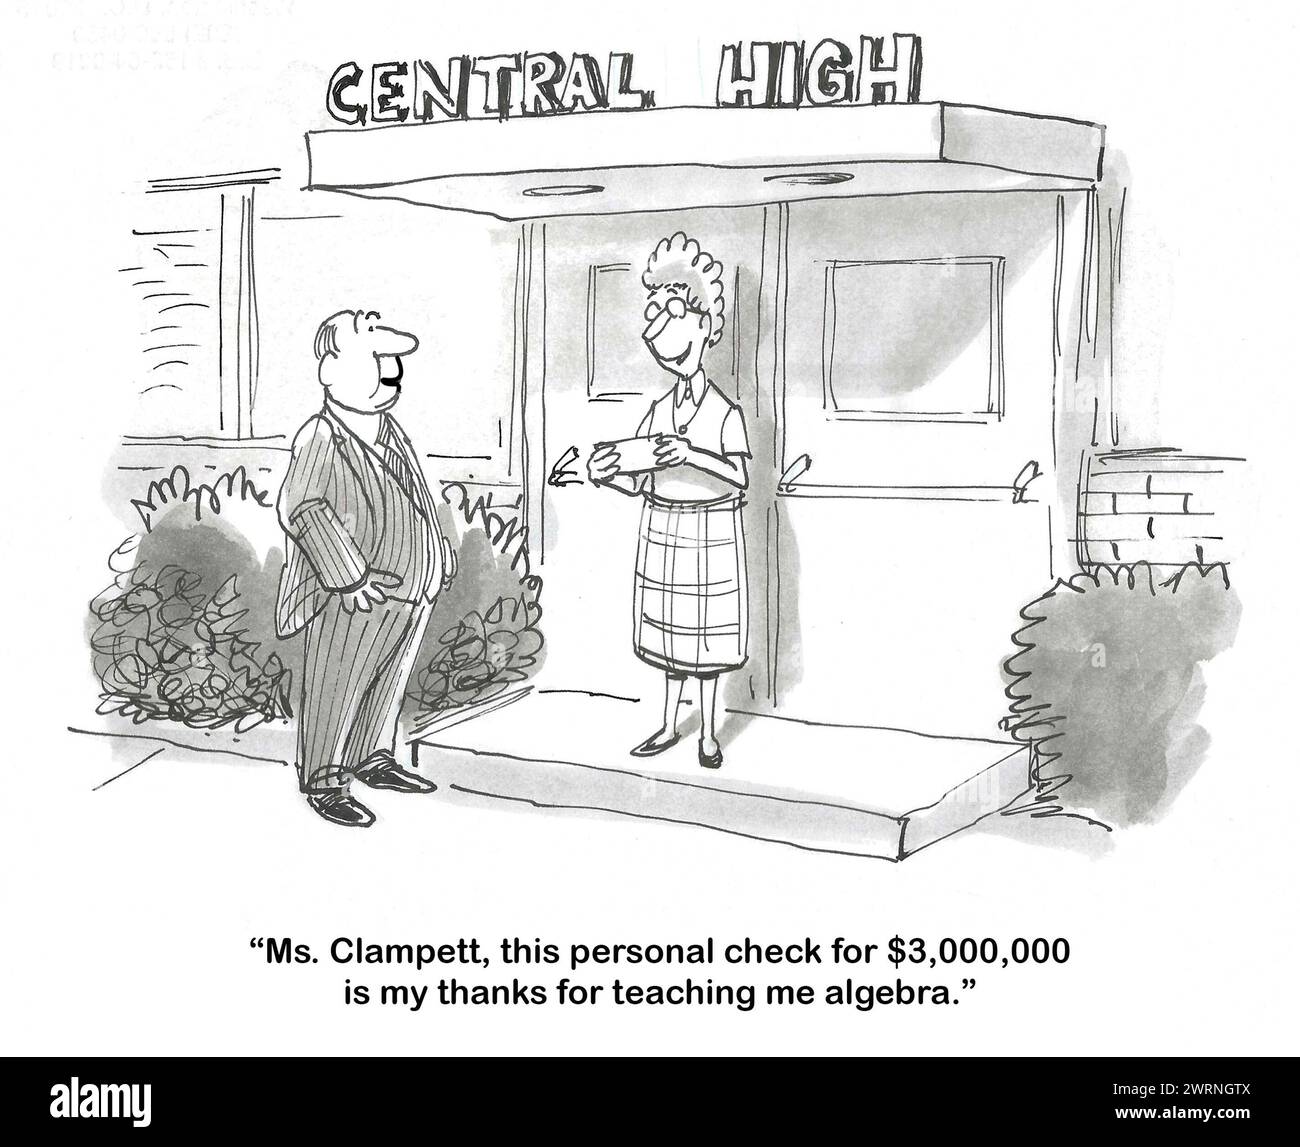 BW-Cartoon eines professionellen Mannes, der zu seinem Mathematiklehrer zurückgeht, mit einem 3 Millionen Dollar Scheck, um ihr dafür zu danken, dass sie ihm Algebra beigebracht hat. Stockfoto